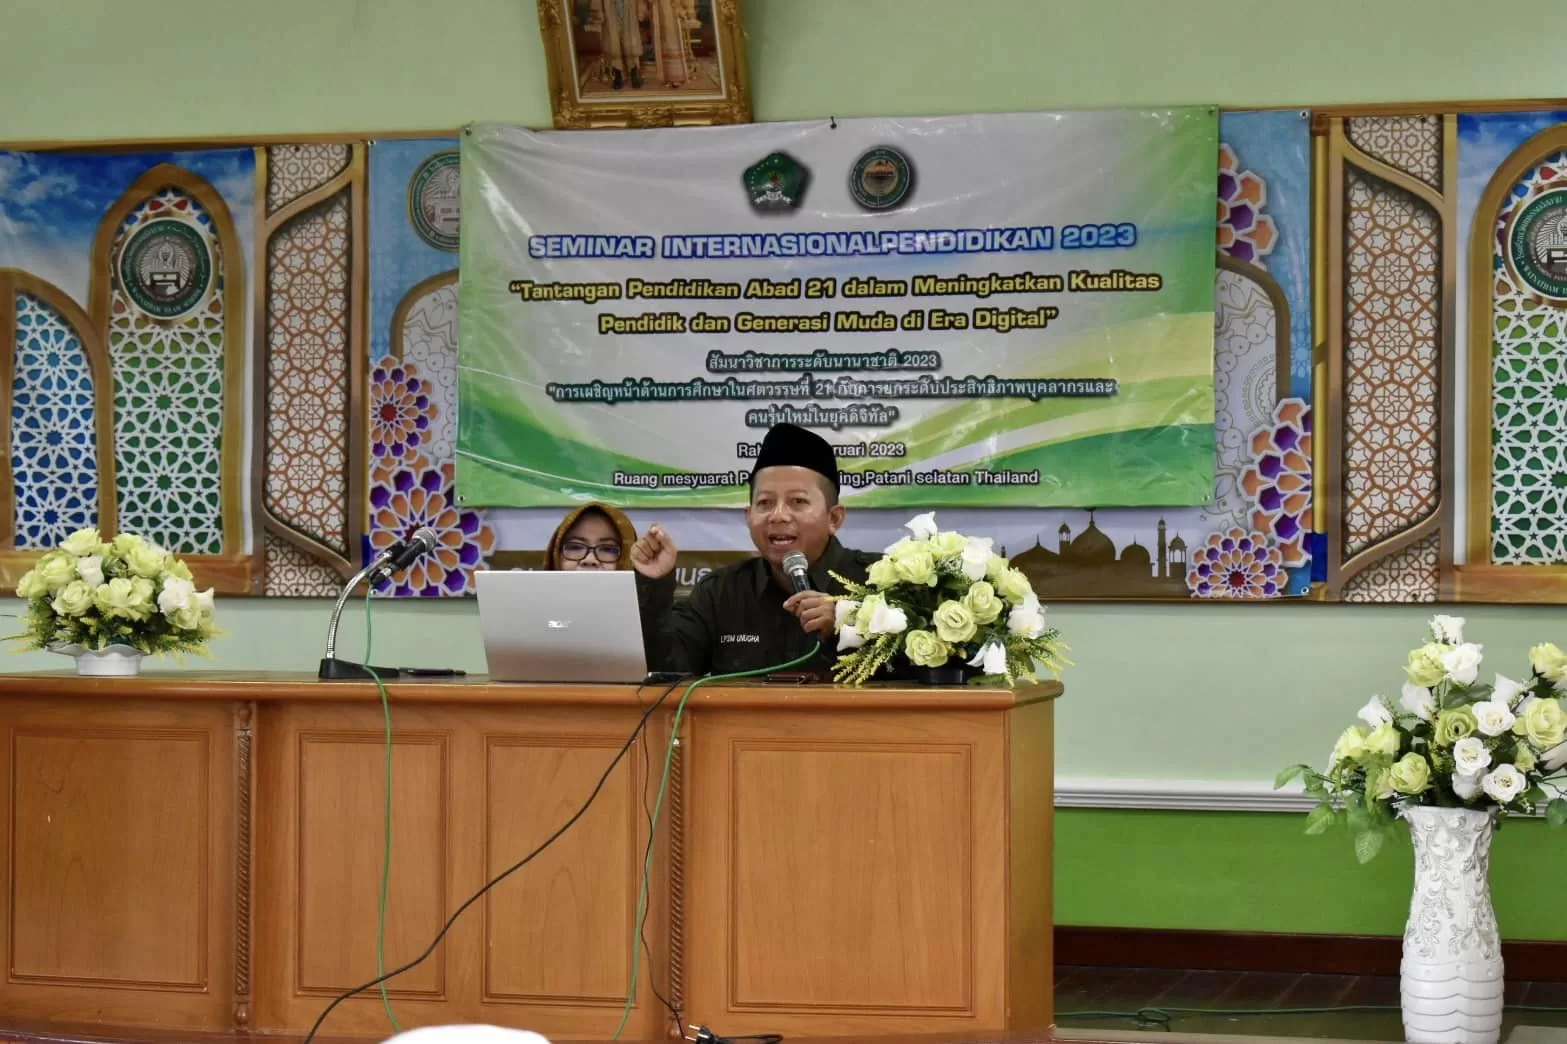 Seminar Internasional Pendidikan 2023 kerjasama antara Watnatham Islam School Pombing, Pattani selatan Thailand dan UNUGHA Cilacap